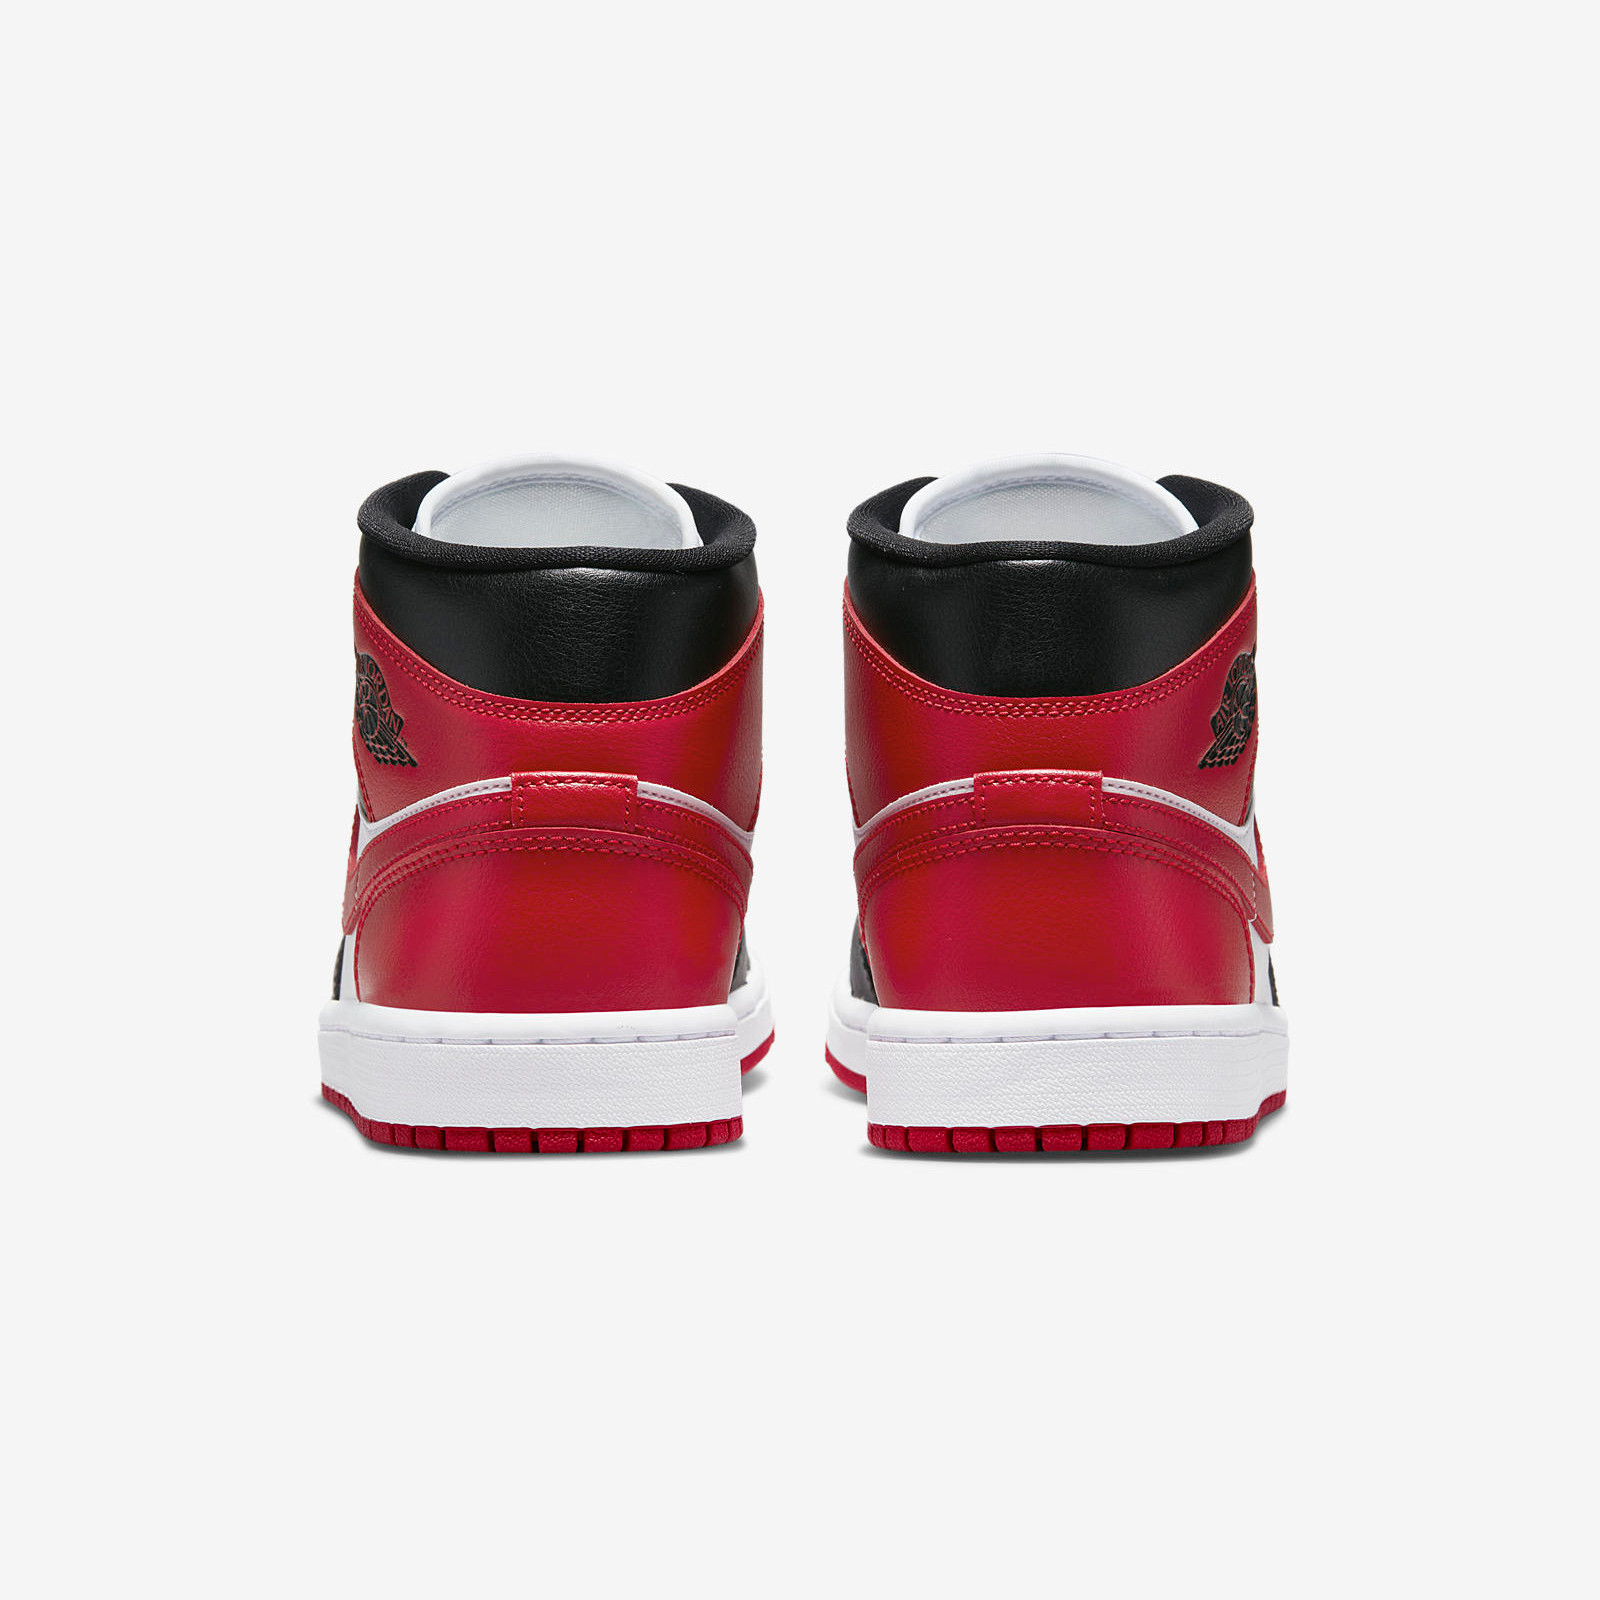 Air Jordan 1 Mid
« Bred Toe »